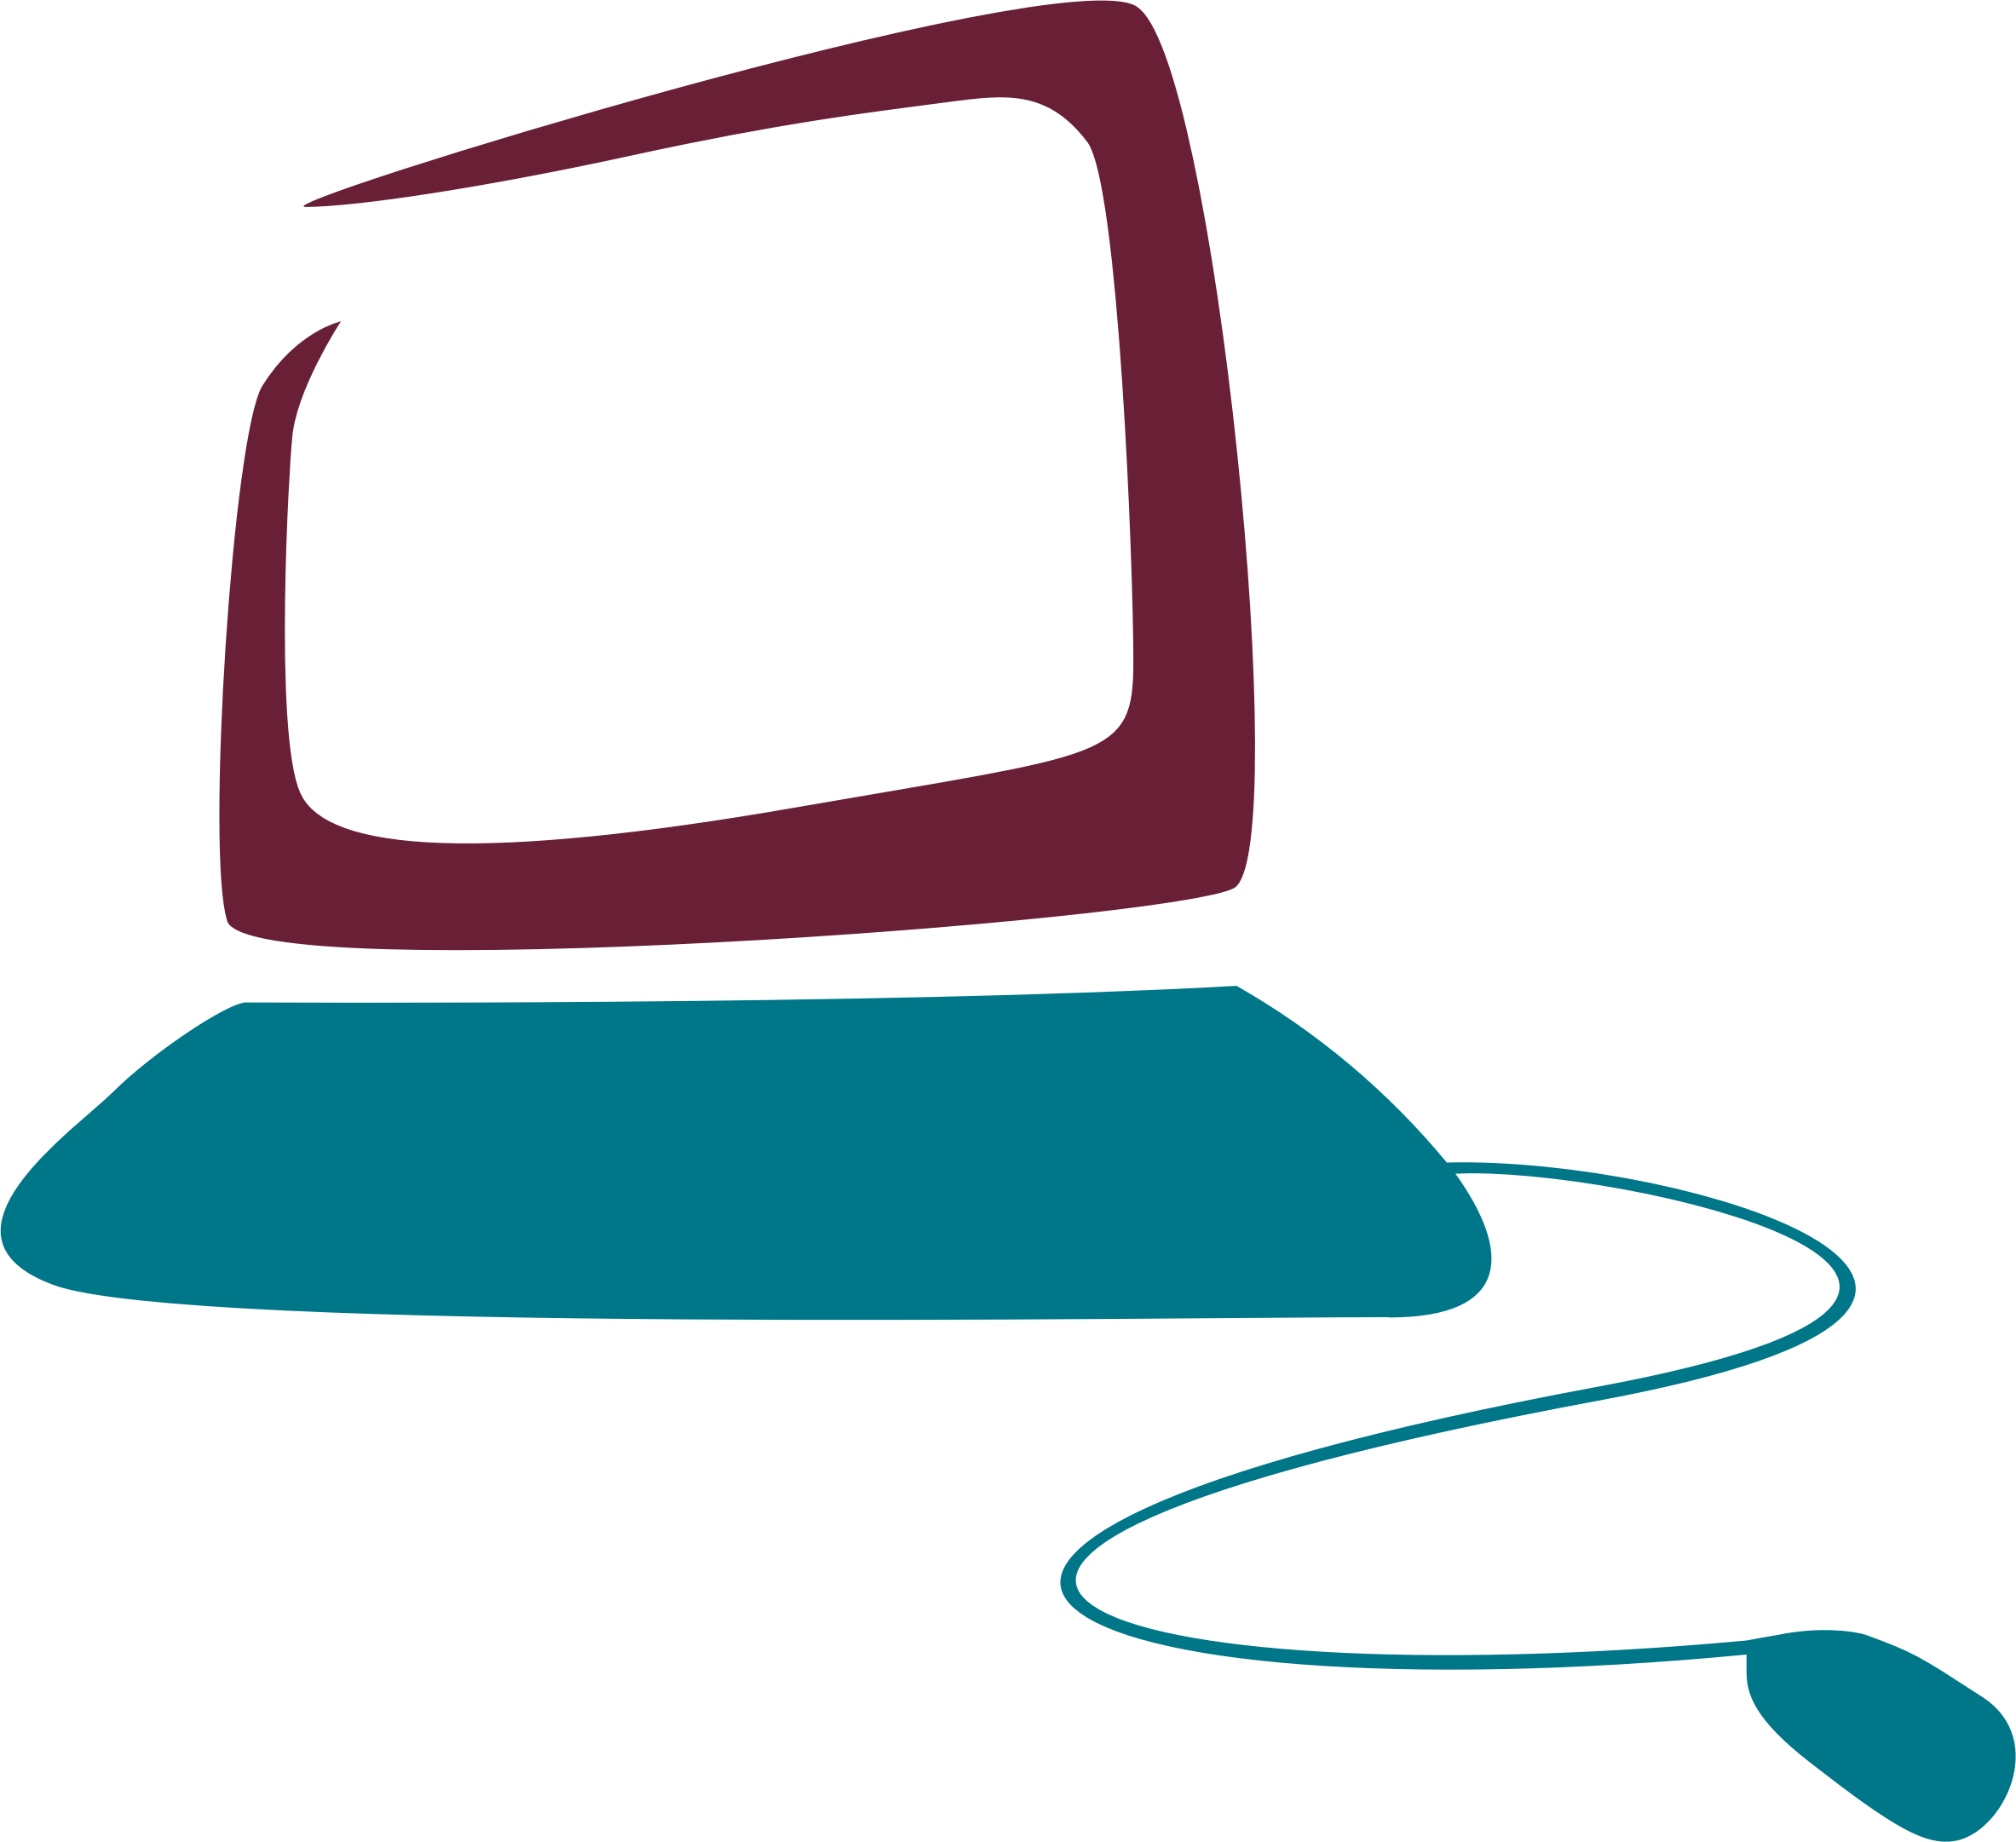 Big Image - Clip Art Computer Logo (2366x2162)